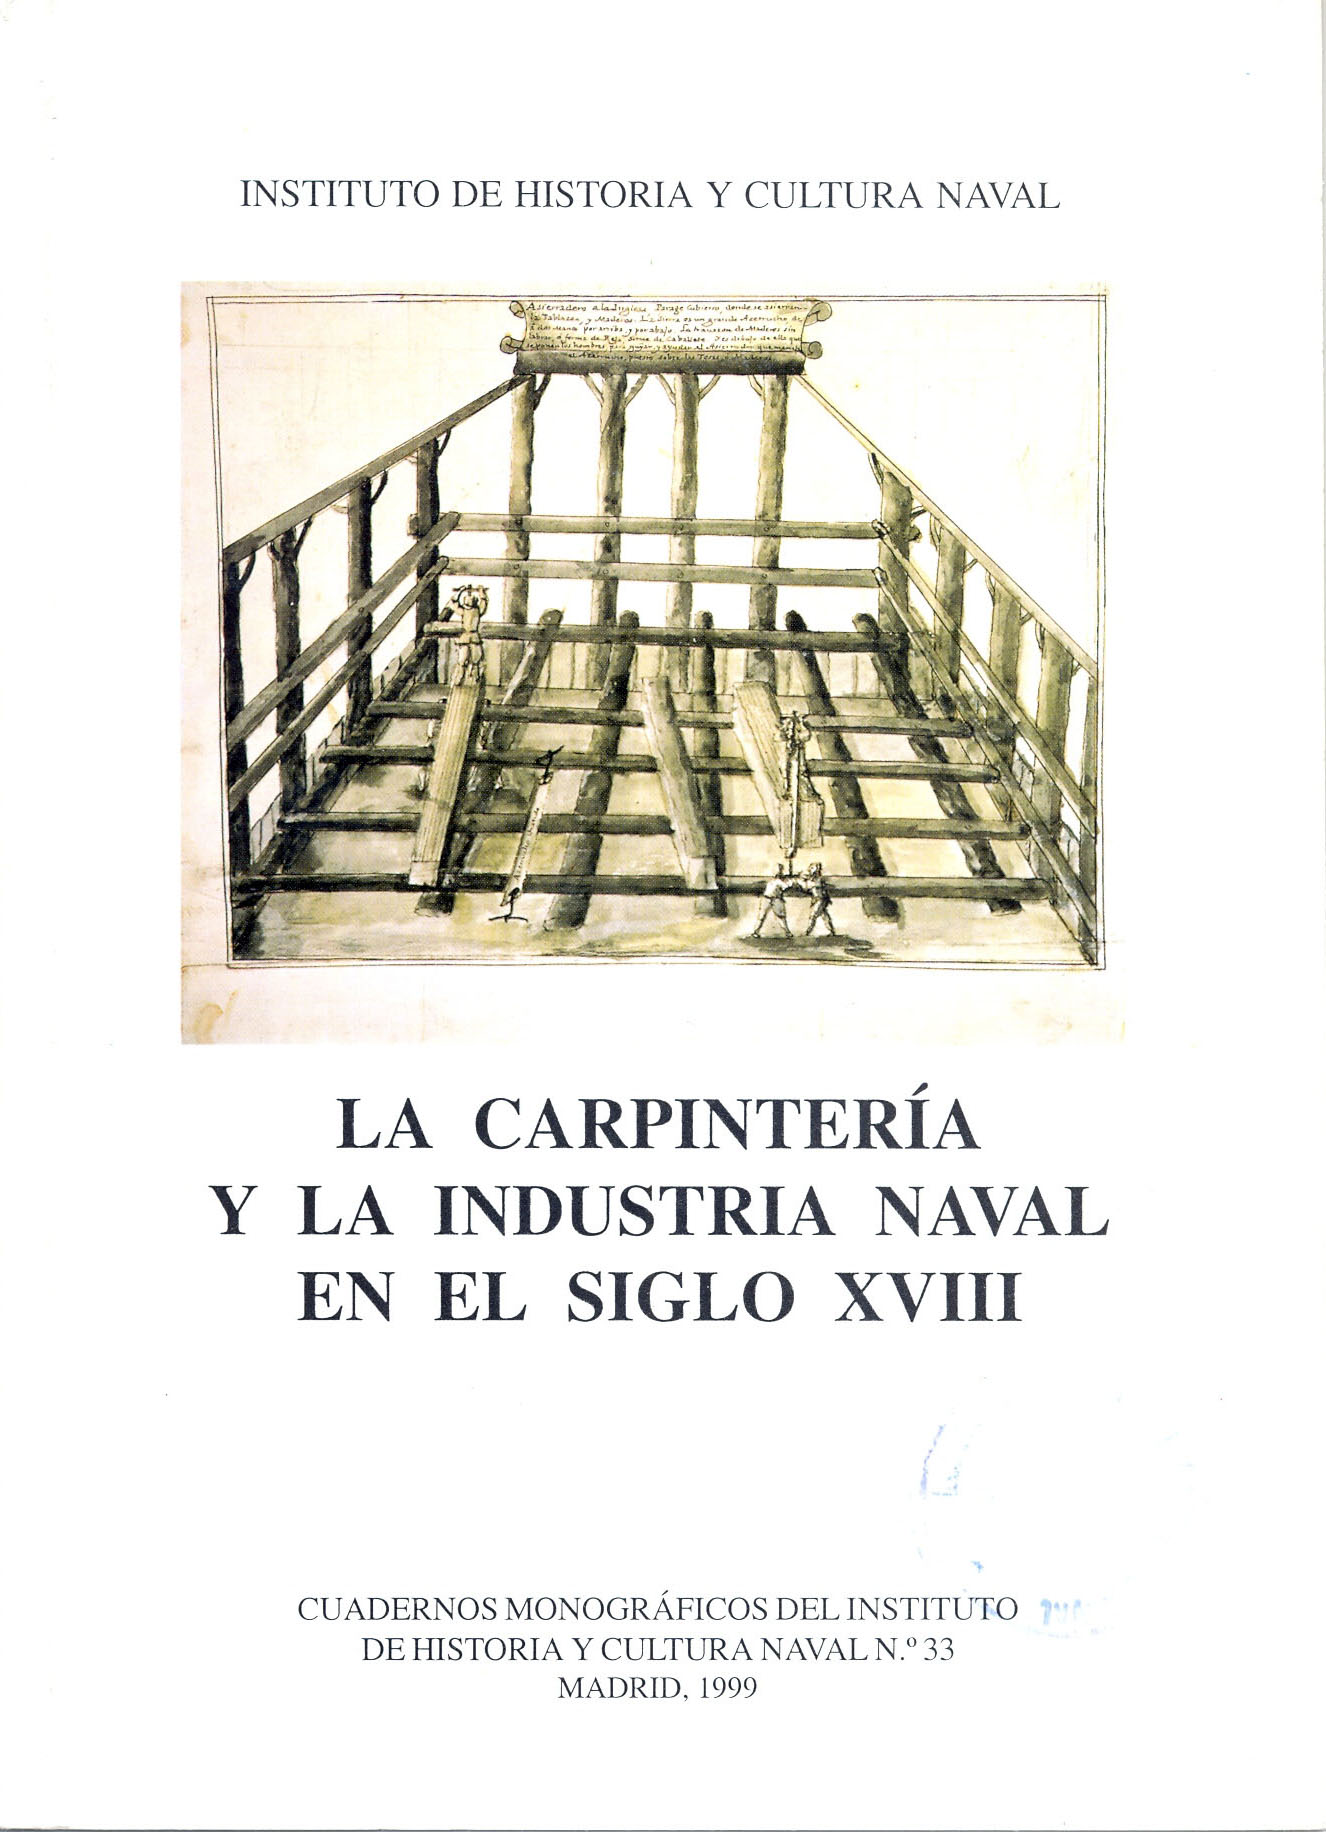 La carpintería y la industria naval en el siglo XVIII